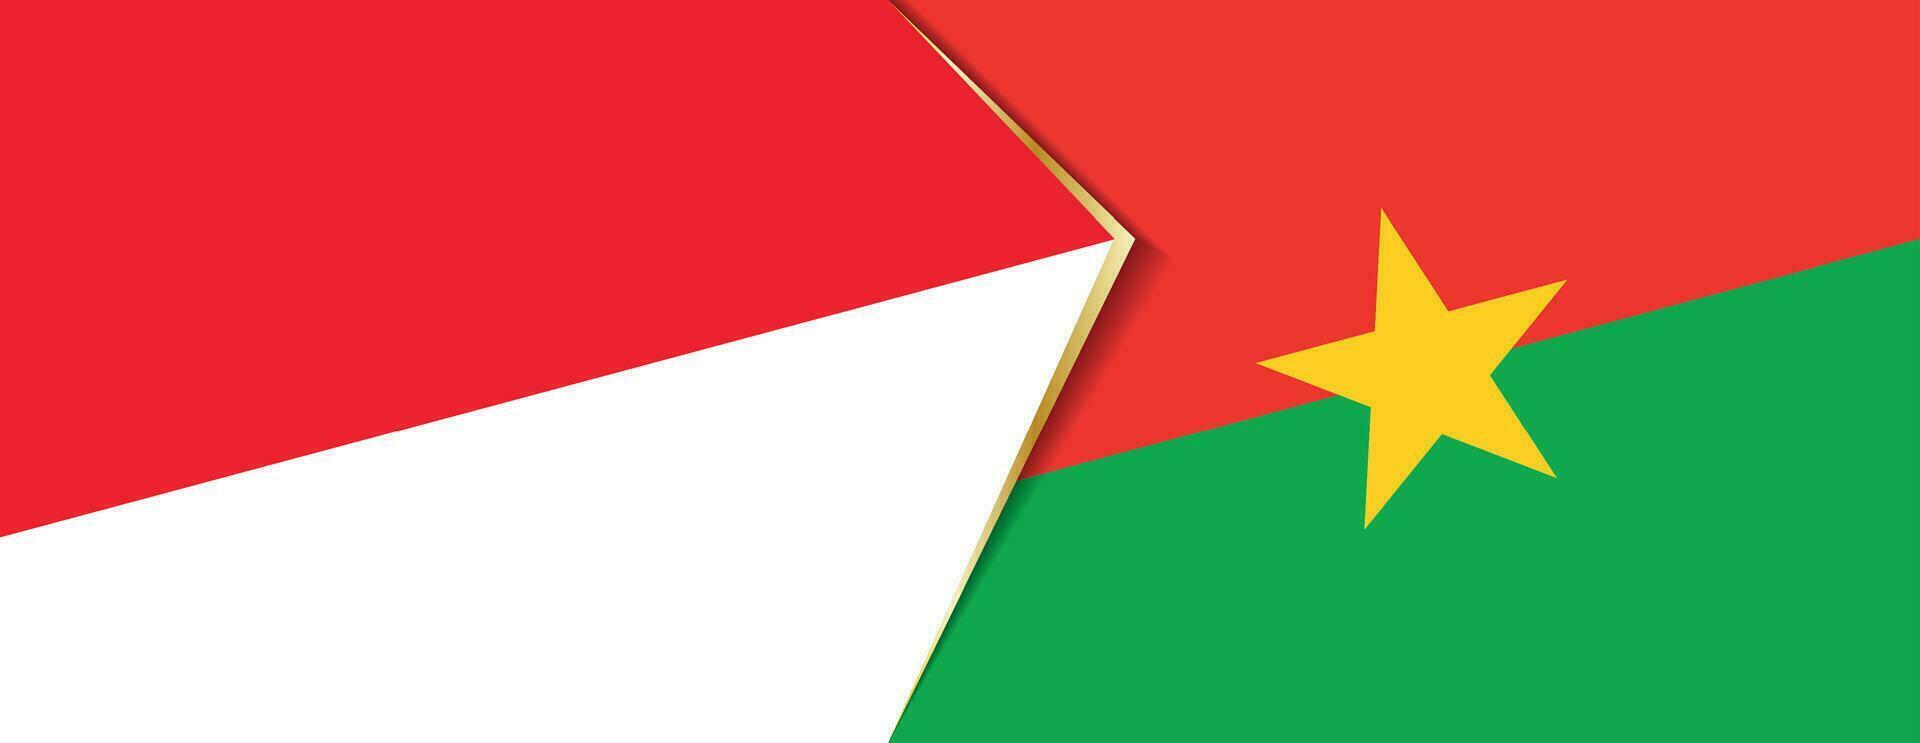 Indonesia y burkina faso banderas, dos vector banderas